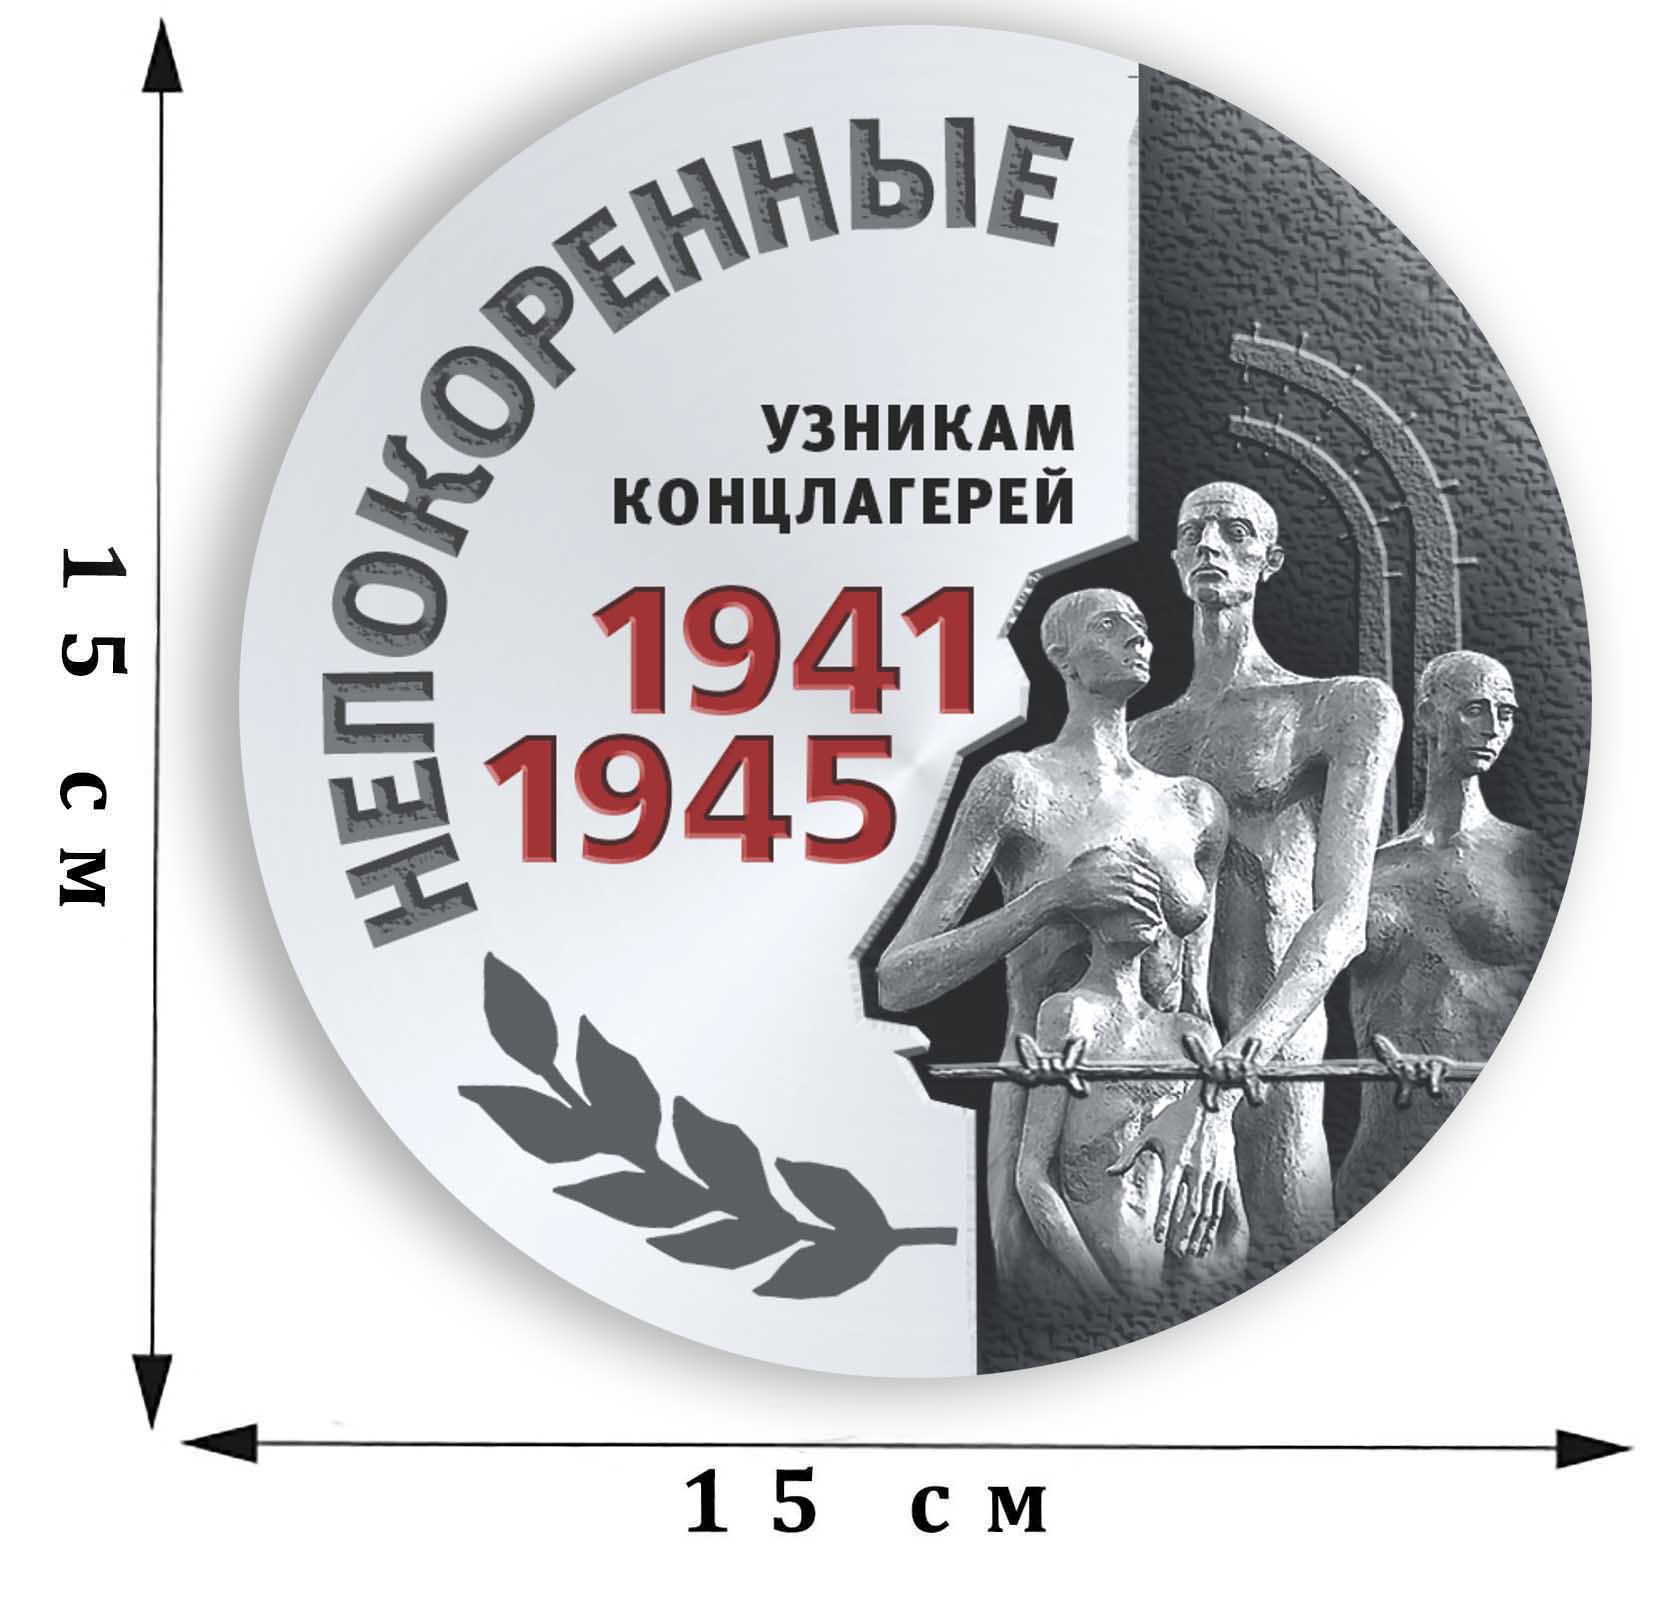 Наклейка в память об узниках концлагерей «Непокоренные» на 75 лет Победы  размером 15 х 15 см